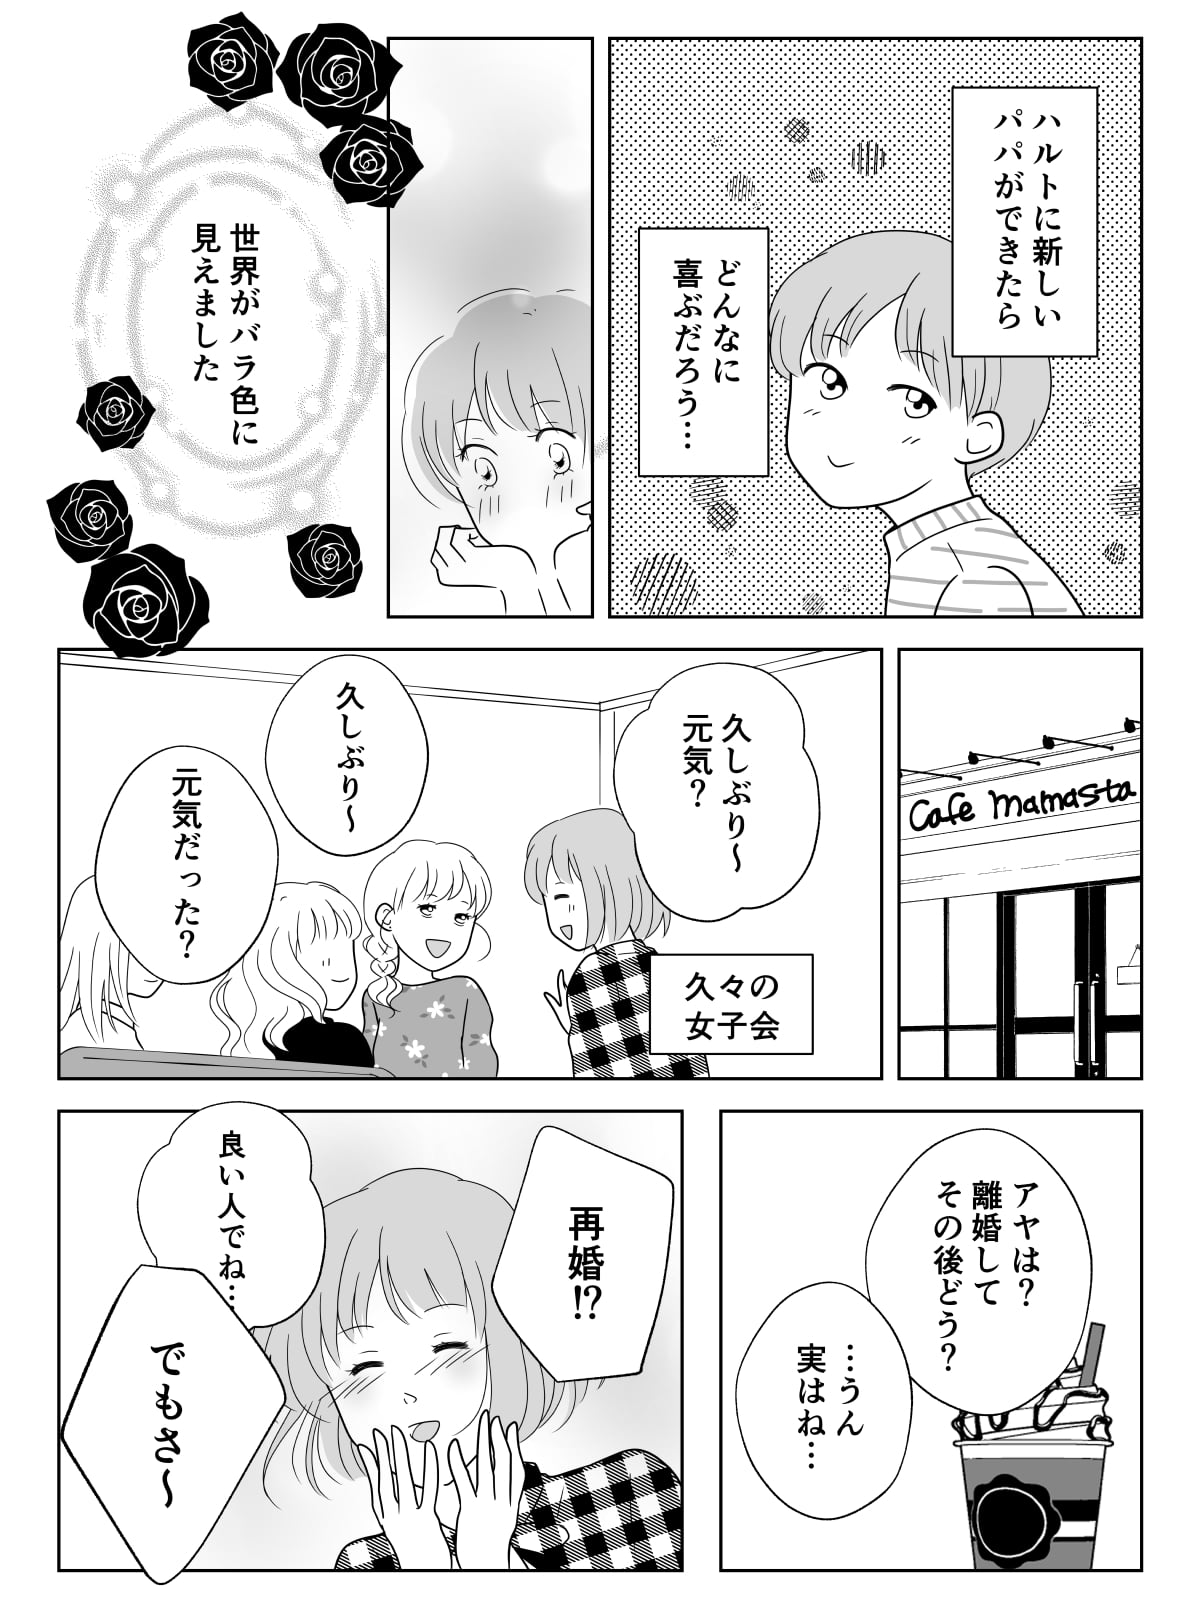 コミック01_003 (1)